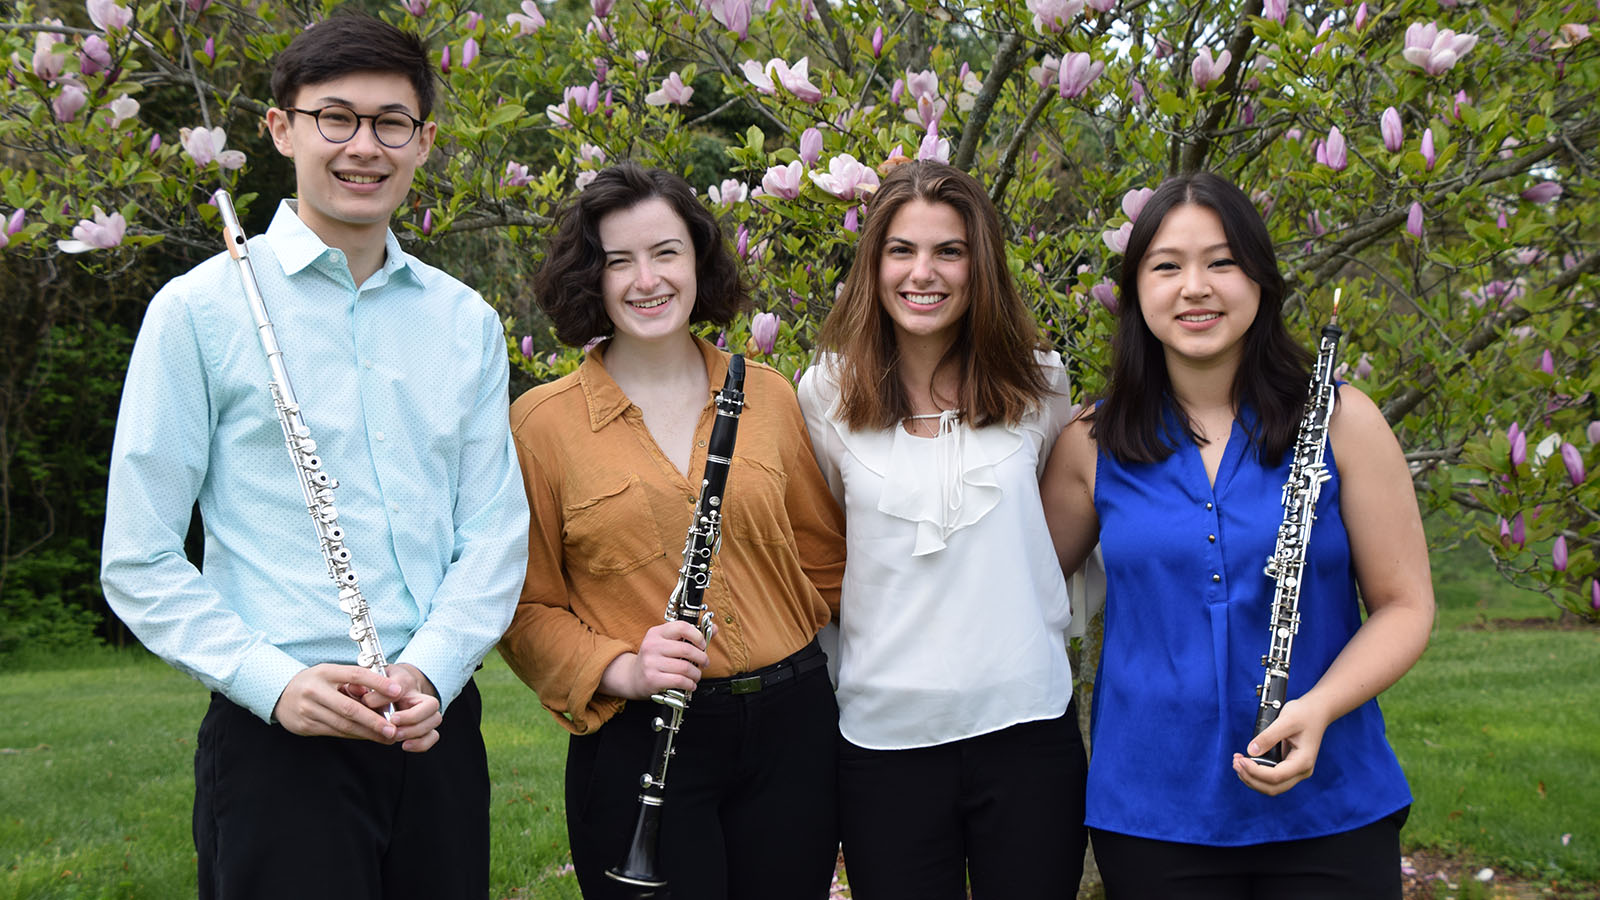 Flutist Matthew Ober, clarinetist Casey Schreck, pianist Maggie Johns, and oboist Stephanie Treat.